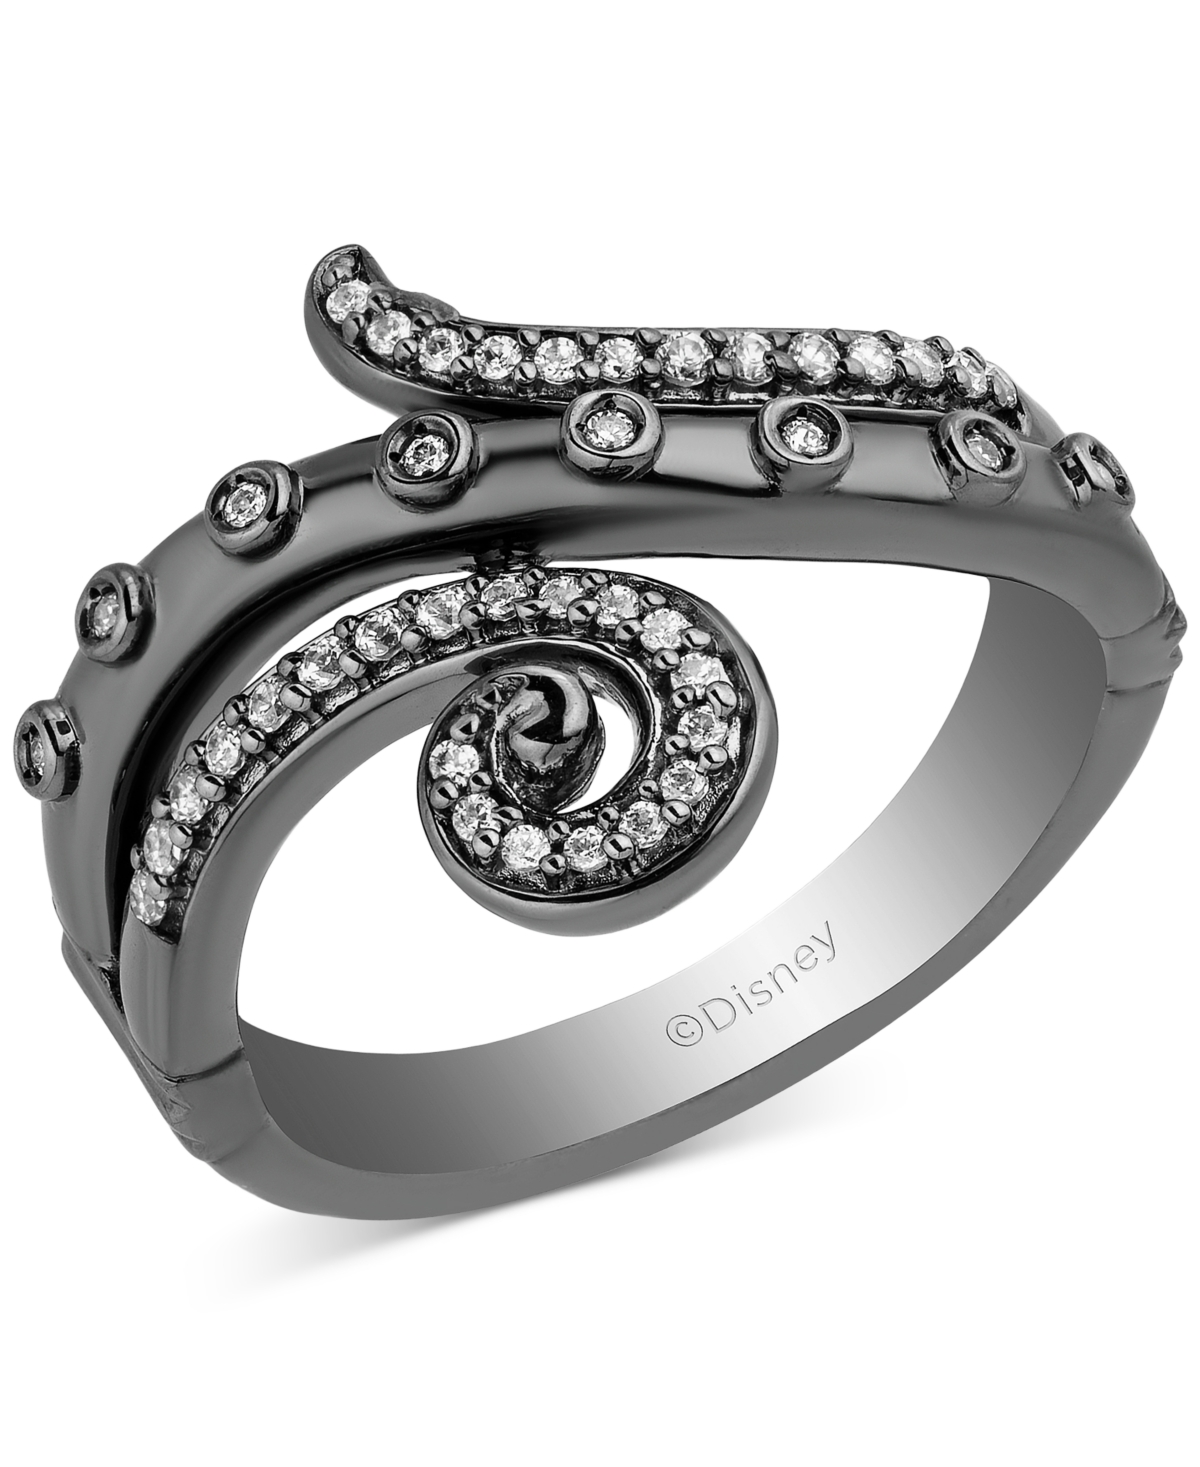 Diamond Ursula Ring (1/10 ct. t.w.) in Black Rhodium-Plated Sterling Silver - Black Rhodium-Plated Sterling Silver